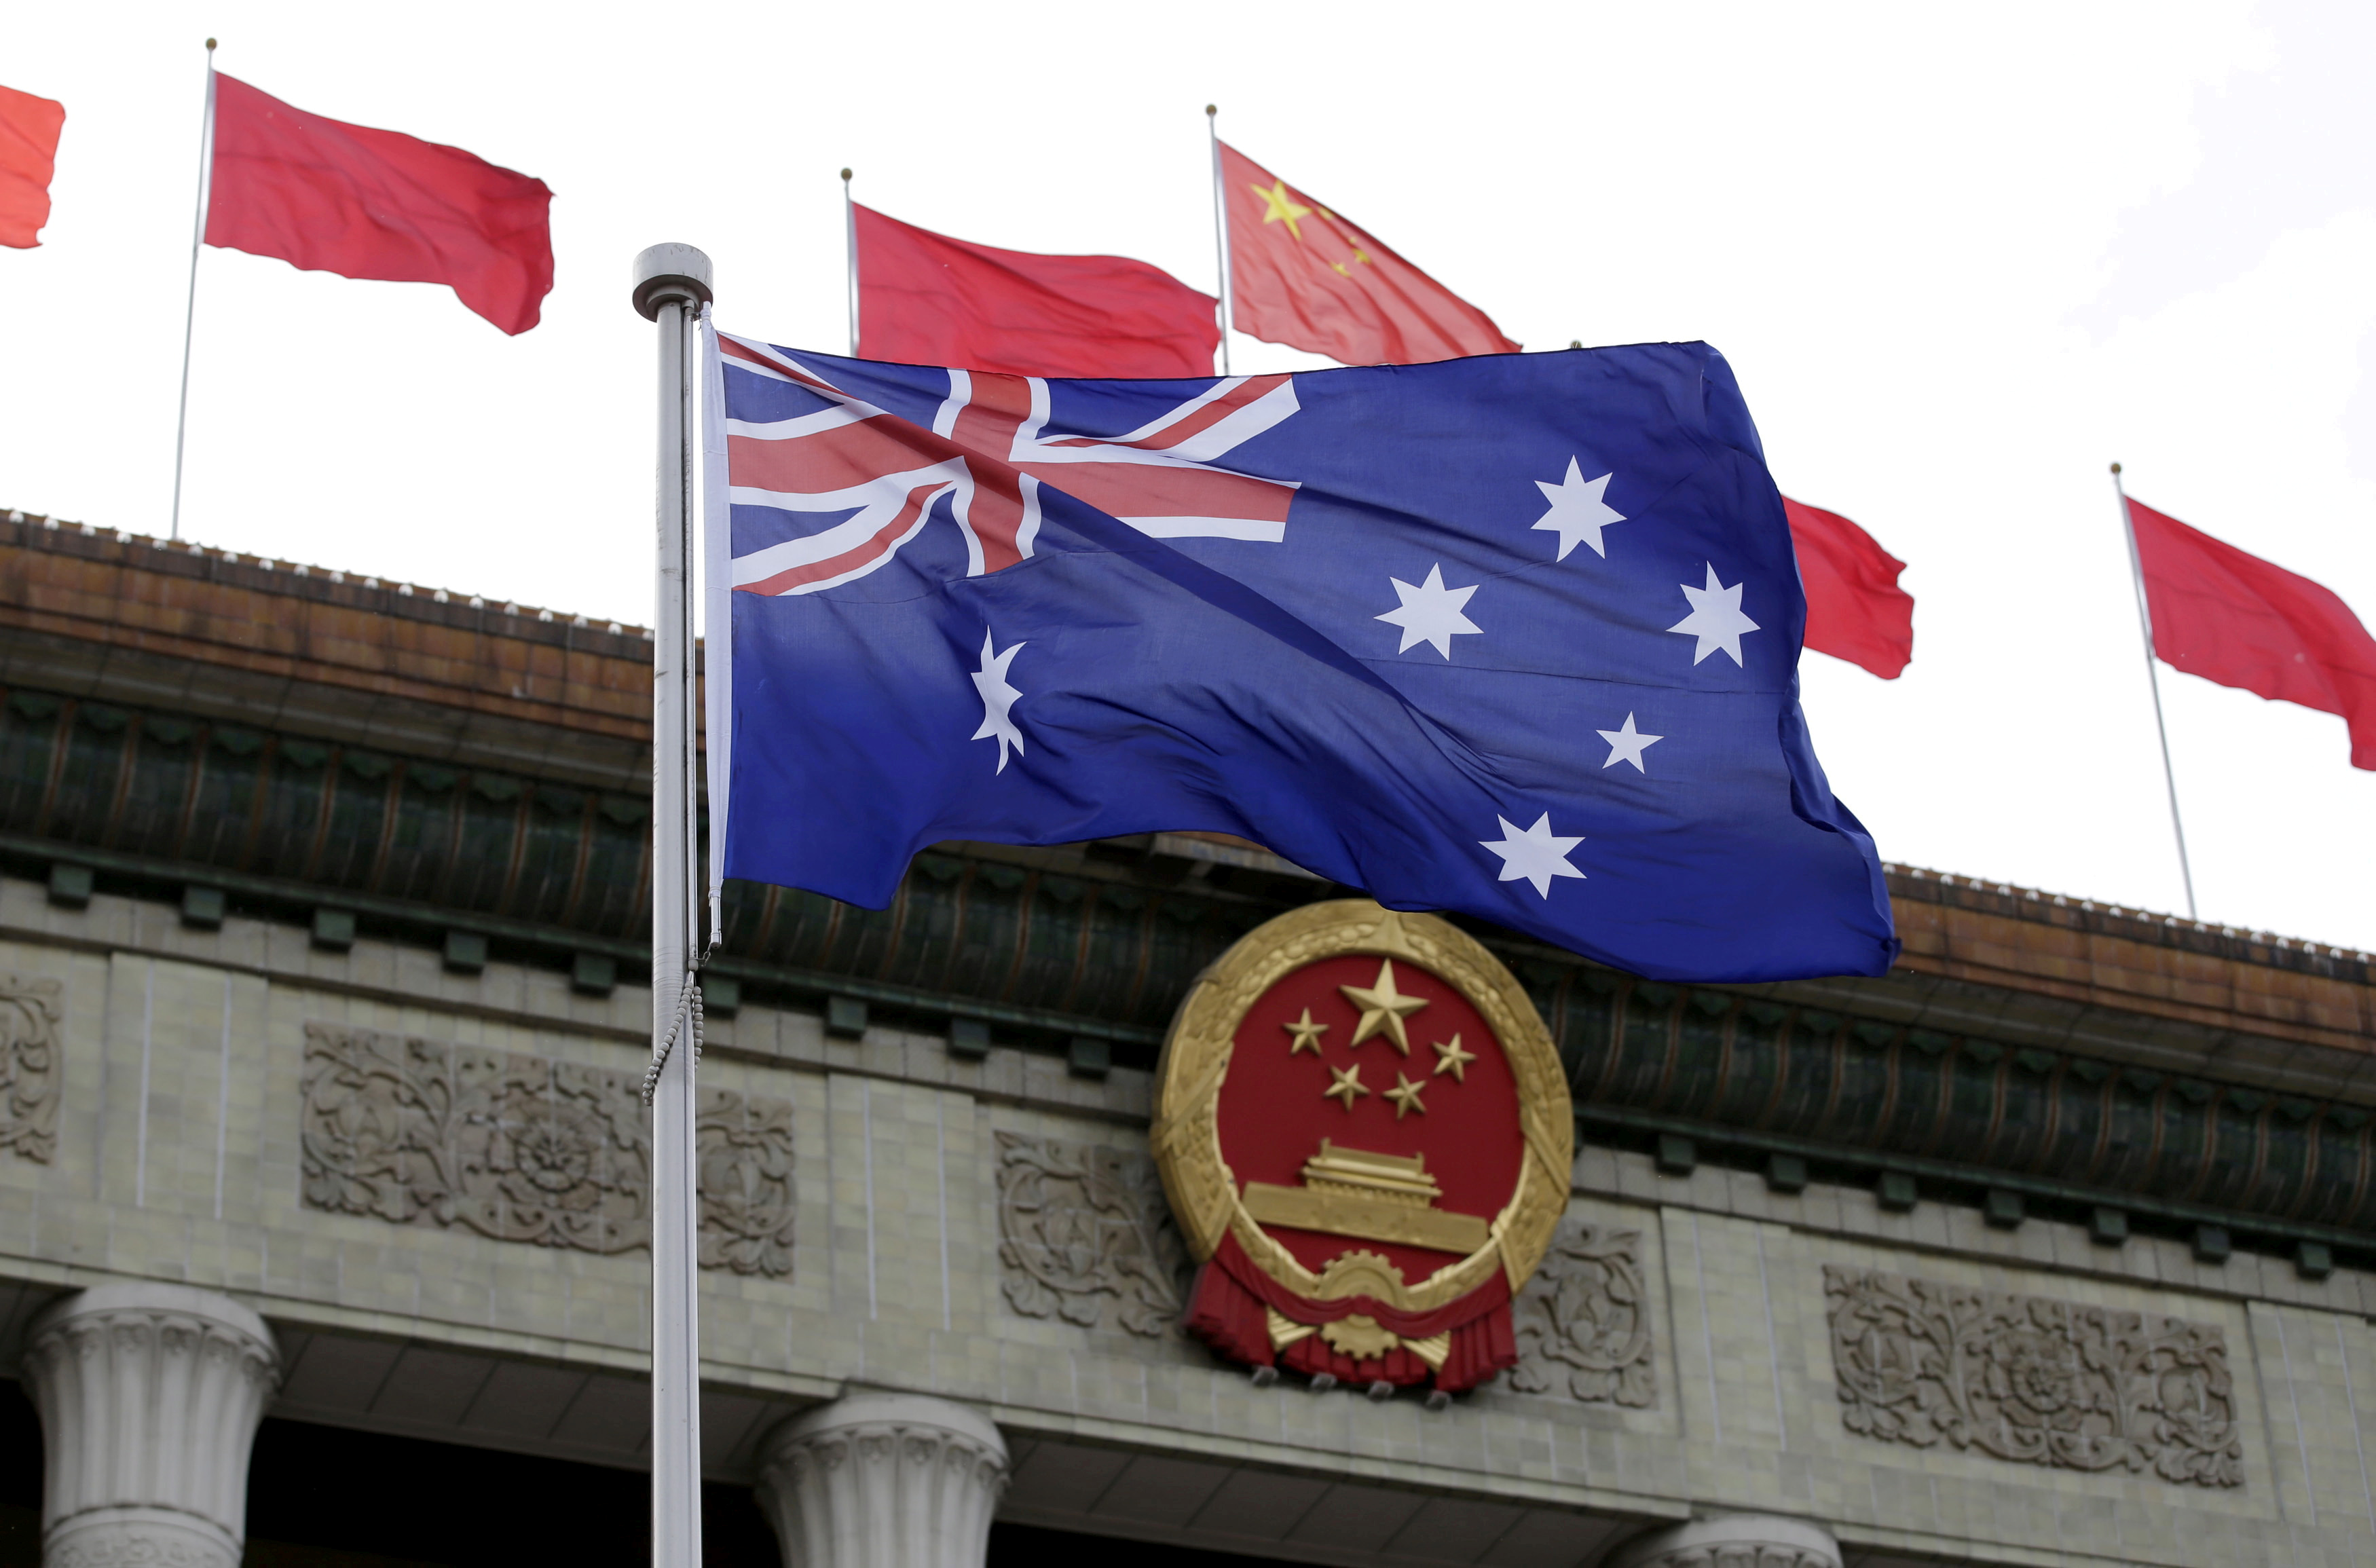 FOTO DE ARCHIVO: Una bandera australiana ondea frente al Gran Salón del Pueblo durante una ceremonia en Beijing, China, el 14 de abril de 2016. REUTERS/Jason Lee